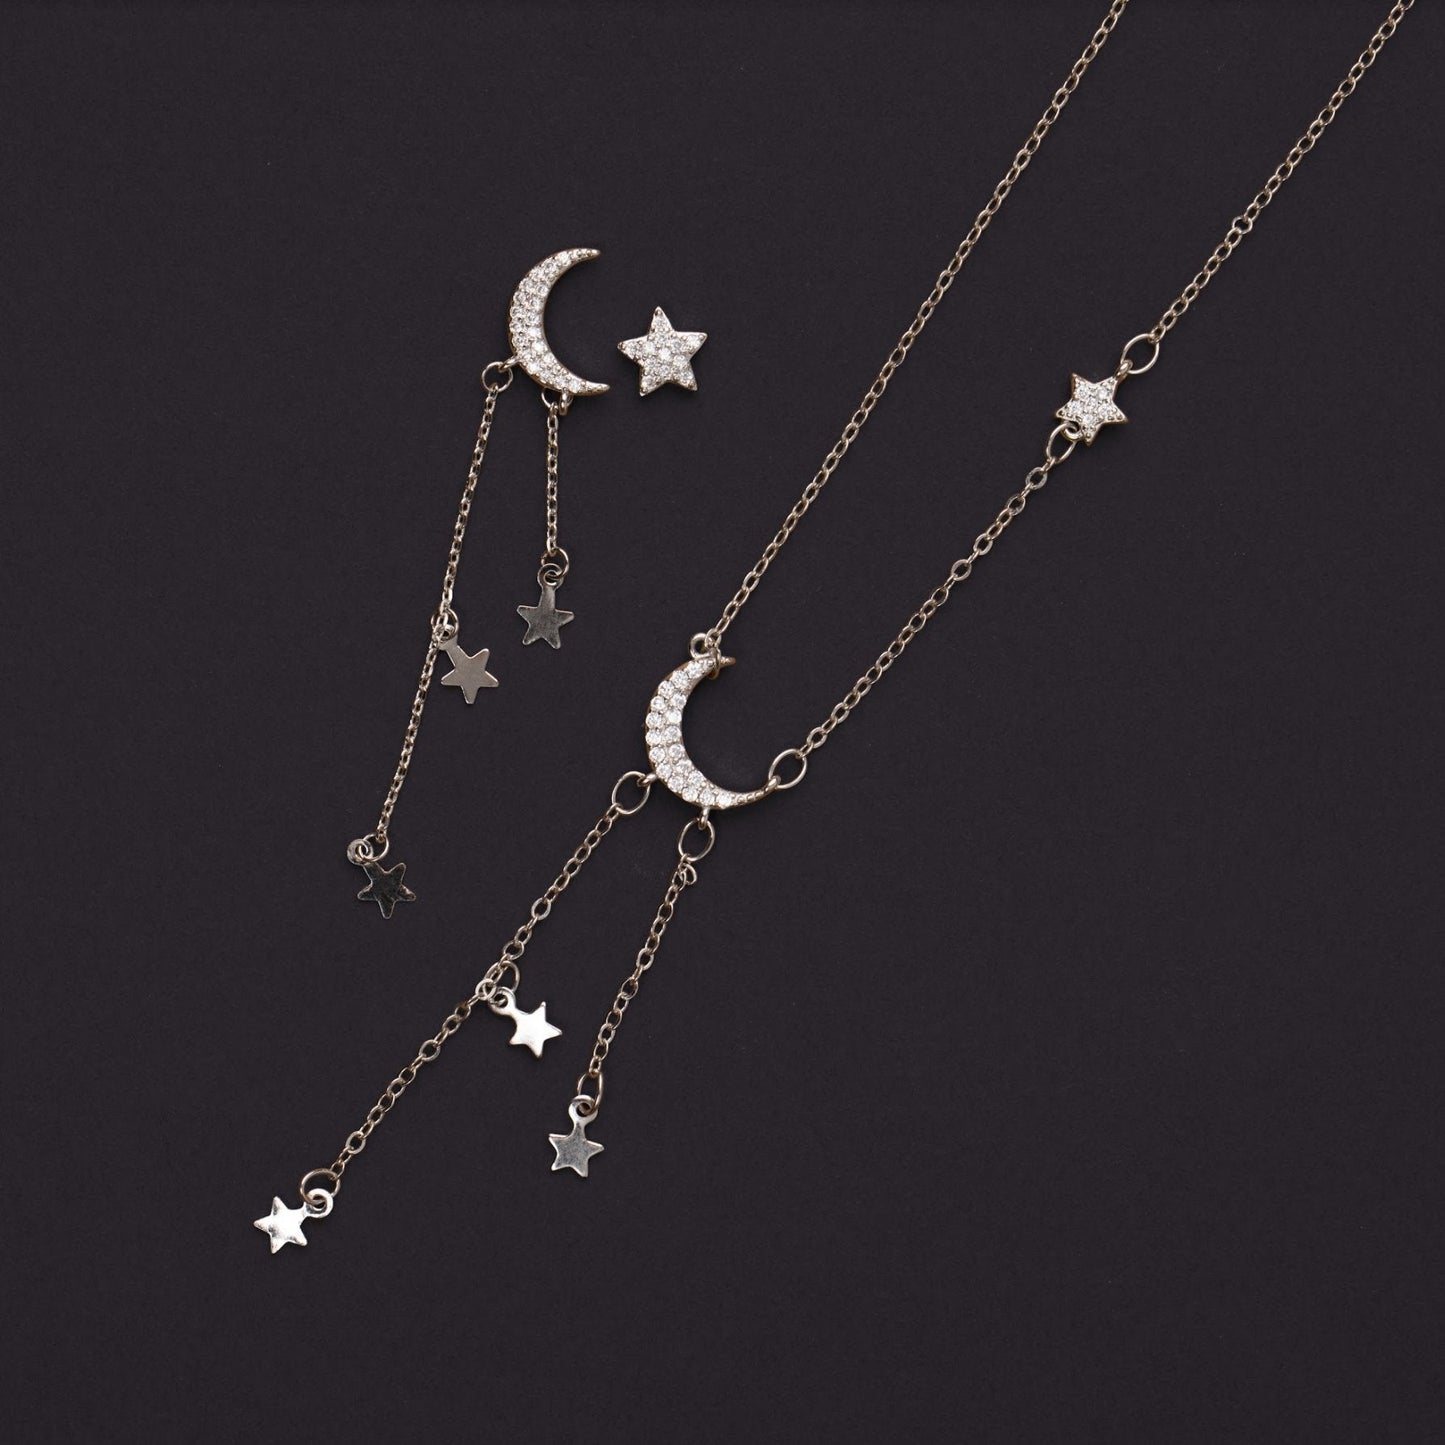 Moon & Star Necklace & Earrings Set